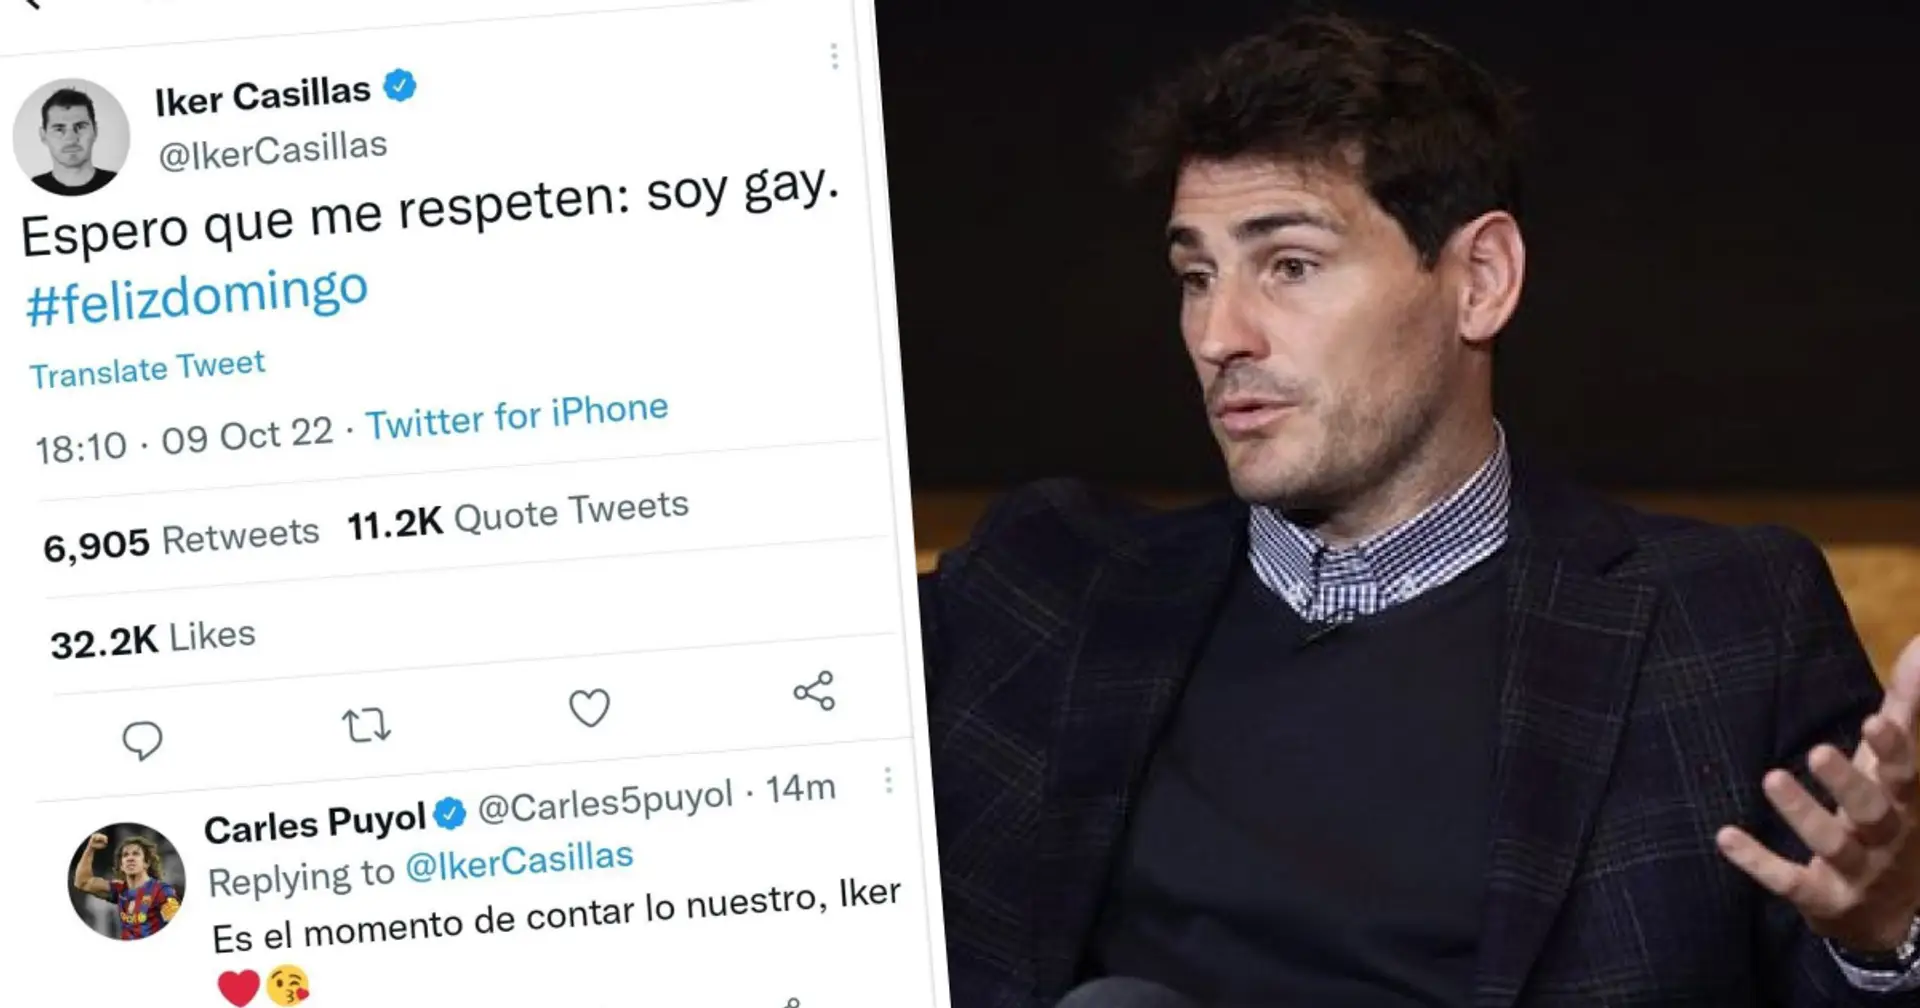 Casillas borra tuit provocativo tras ser criticado por fans. ¿Qué está pasando? Explicado